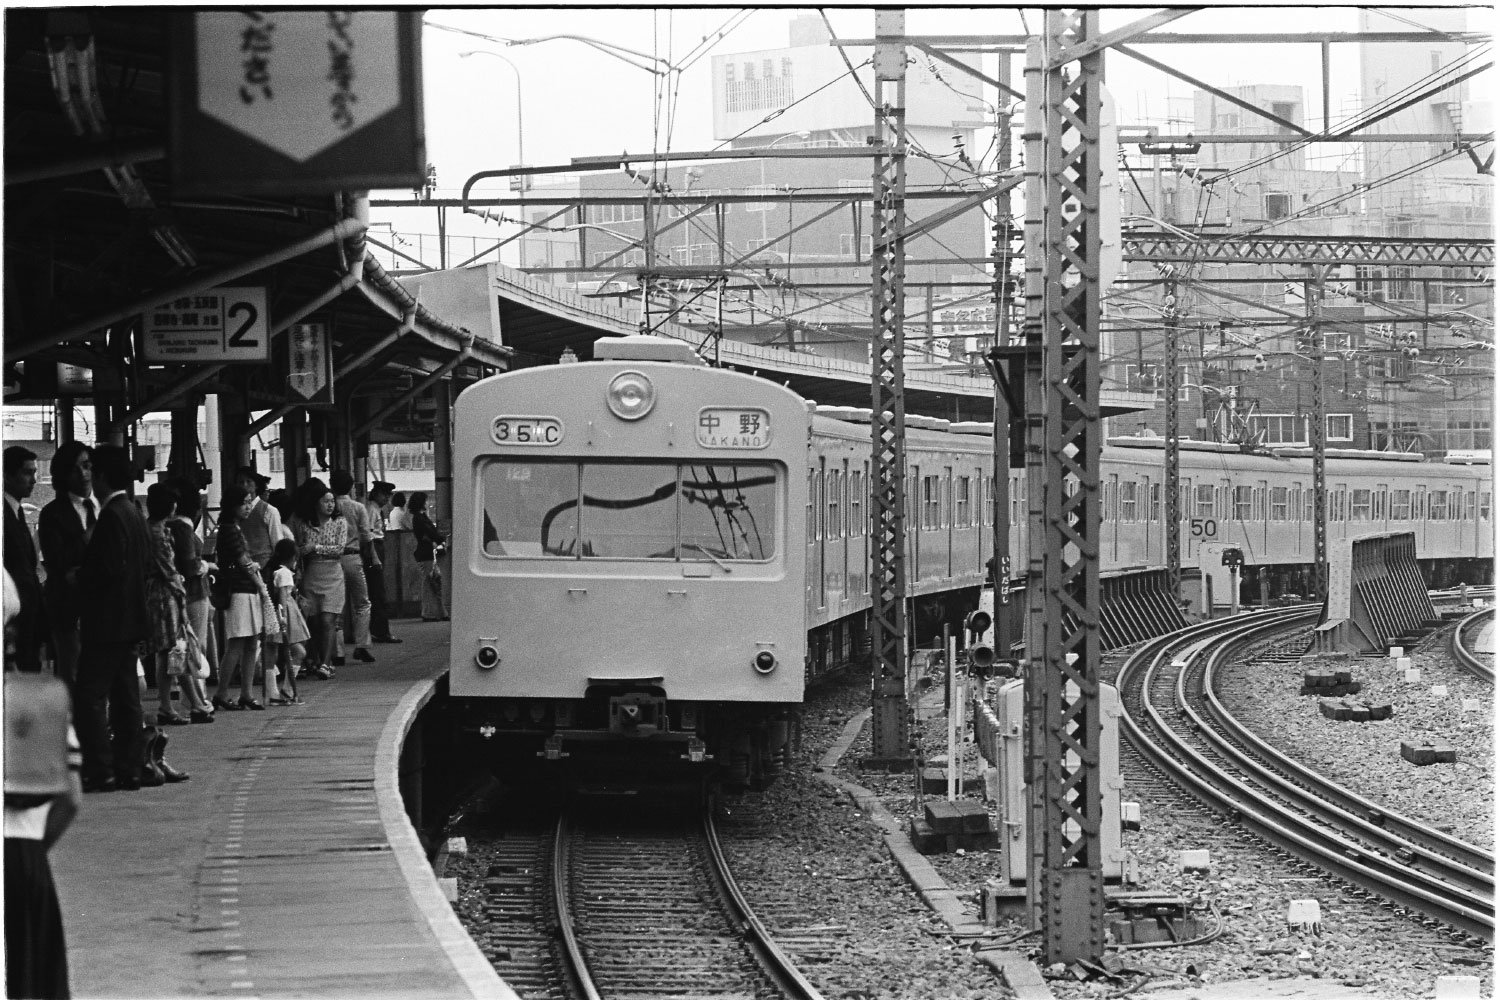 牛込駅と飯田町駅の中間に作られ、大きく湾曲していた飯田橋駅ホーム。（写真提供＝交通新聞クリエイト〈1974年撮影〉）